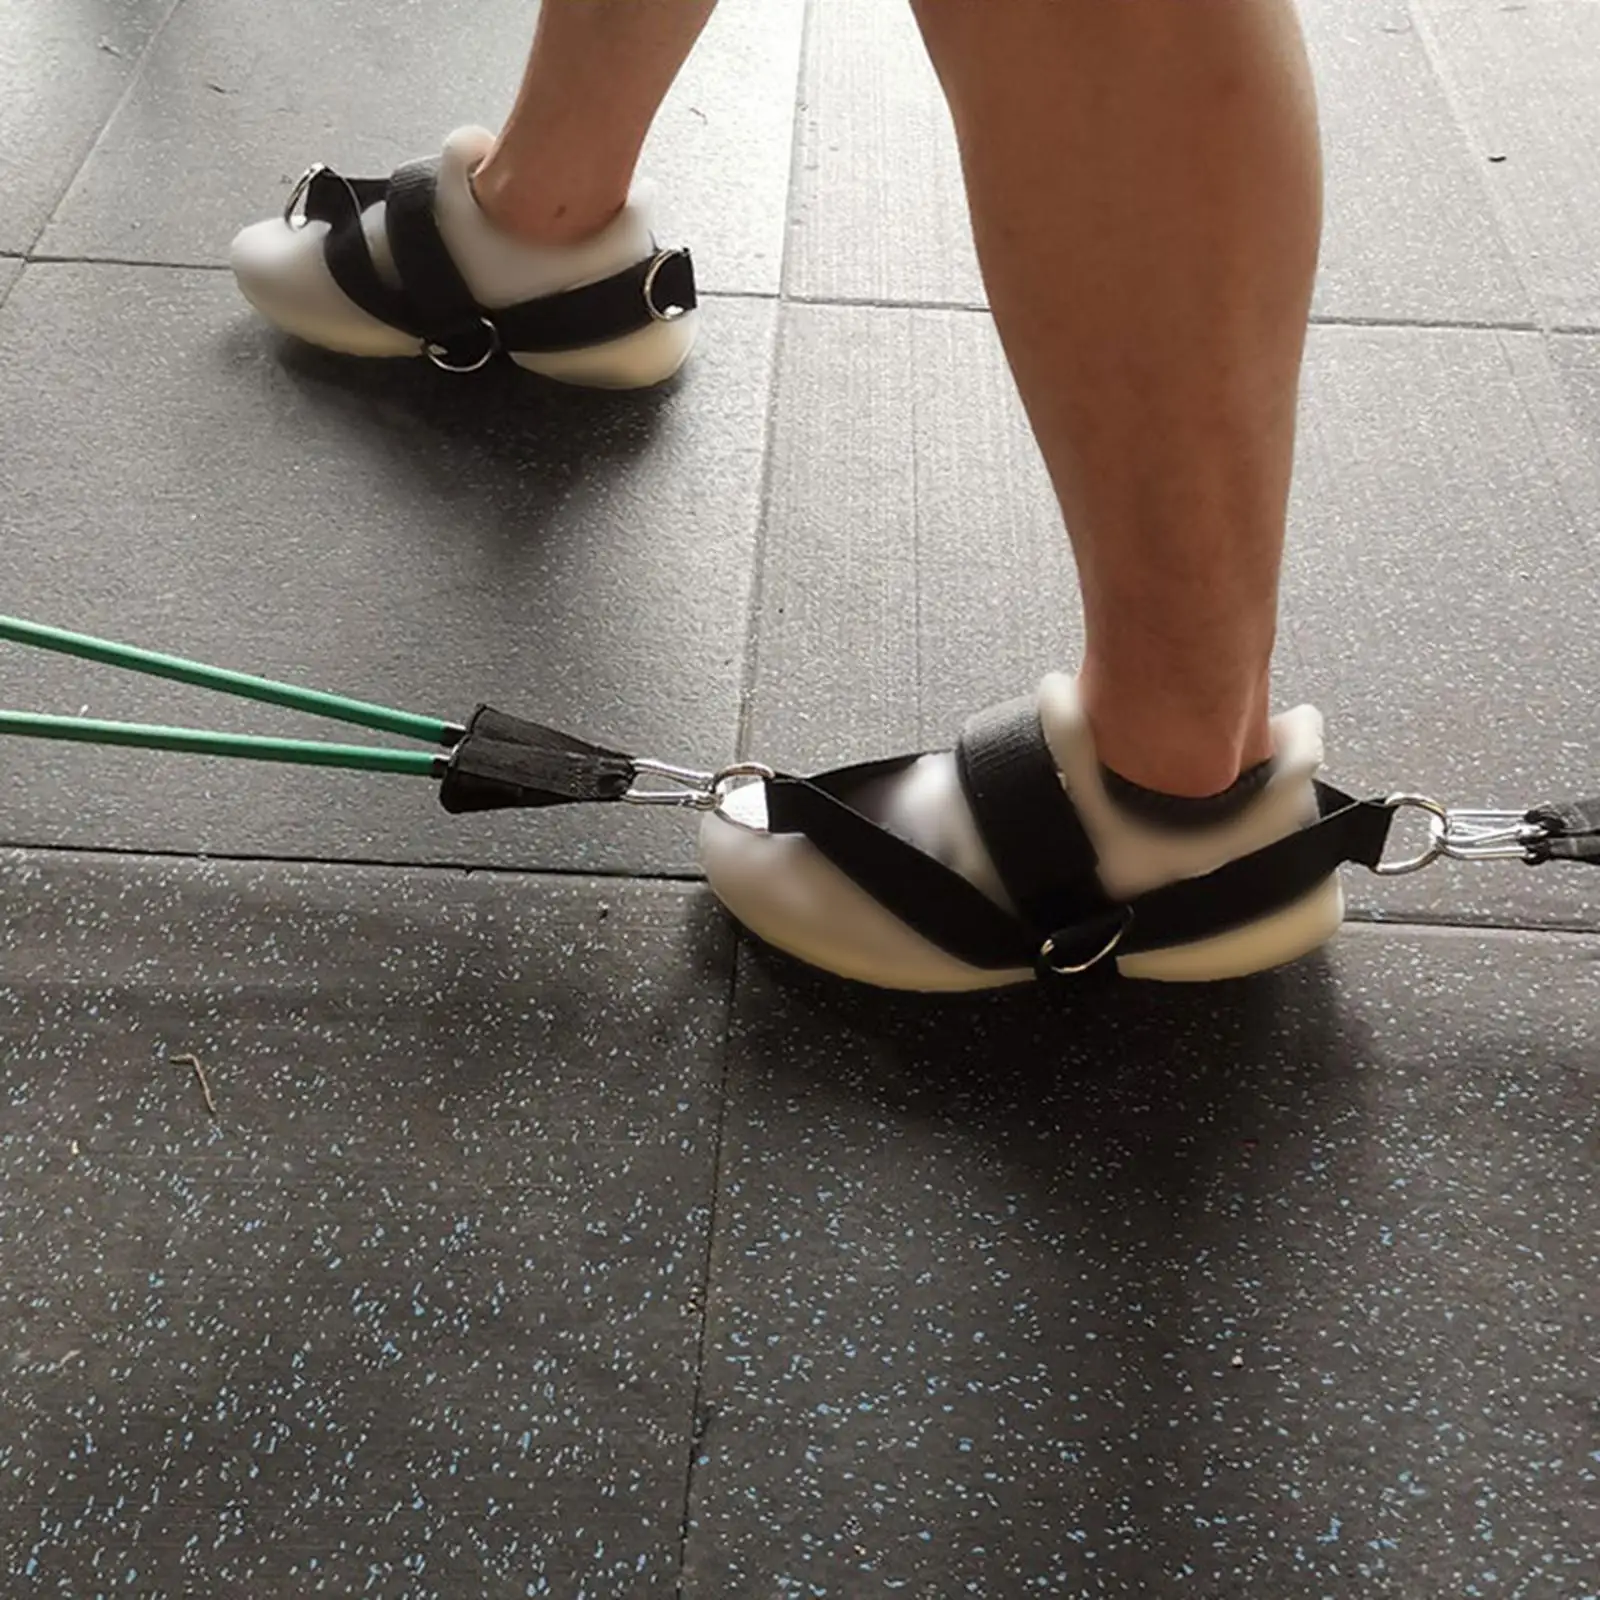 2Pcs Nylon Foot Strap Leg Exercise for Fitness Training